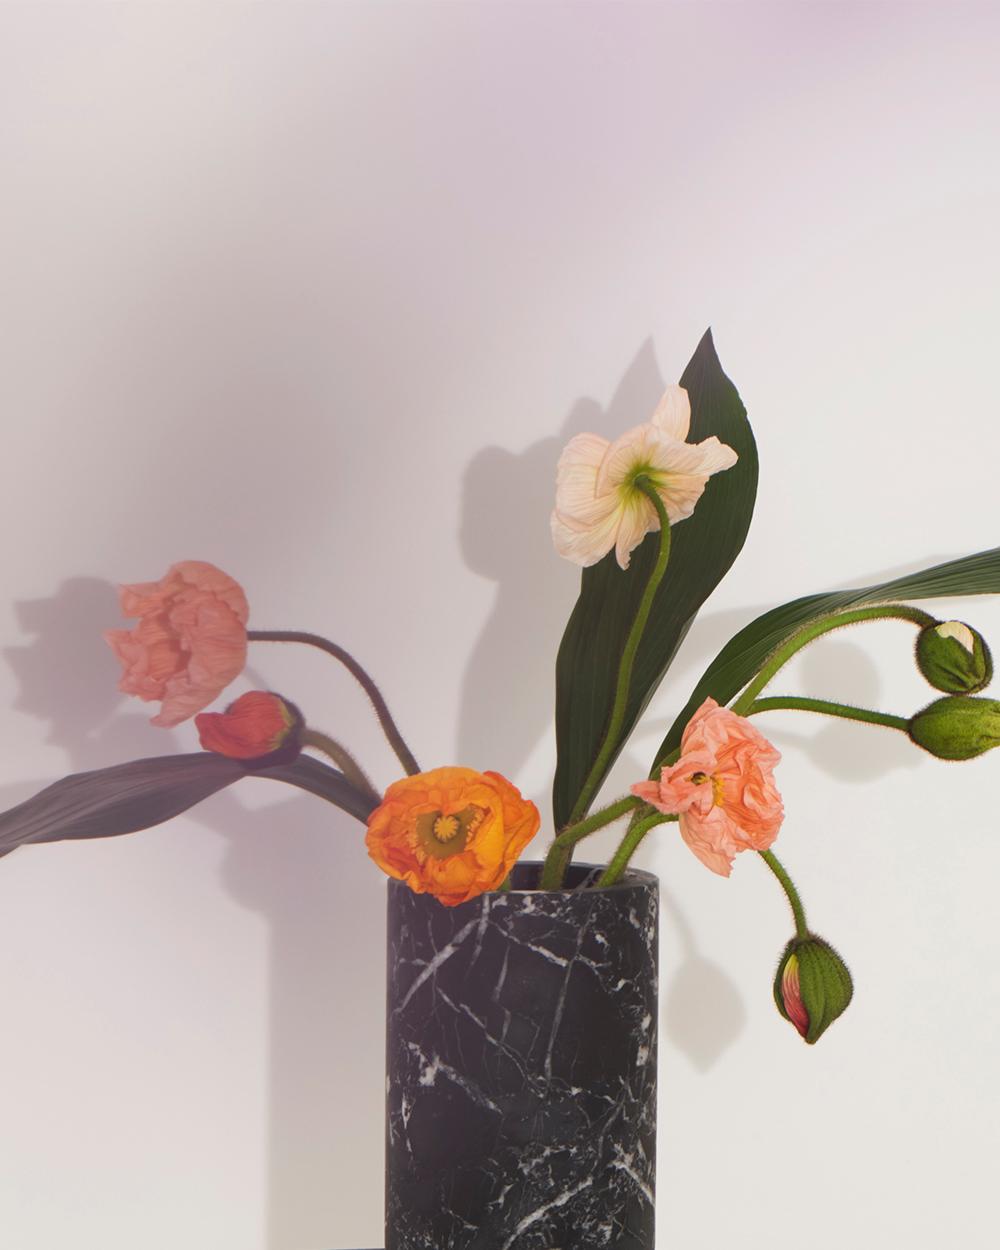 Vase à fleurs en marbre Marquinia noir, conçu par Karen Chekerdjian, fabriqué en Italie
Fait partie des accessoires de la Collection S'épanouir - vases, bougies, bols. Il peut être utilisé pour personnaliser la table Inside Out Dining et la console